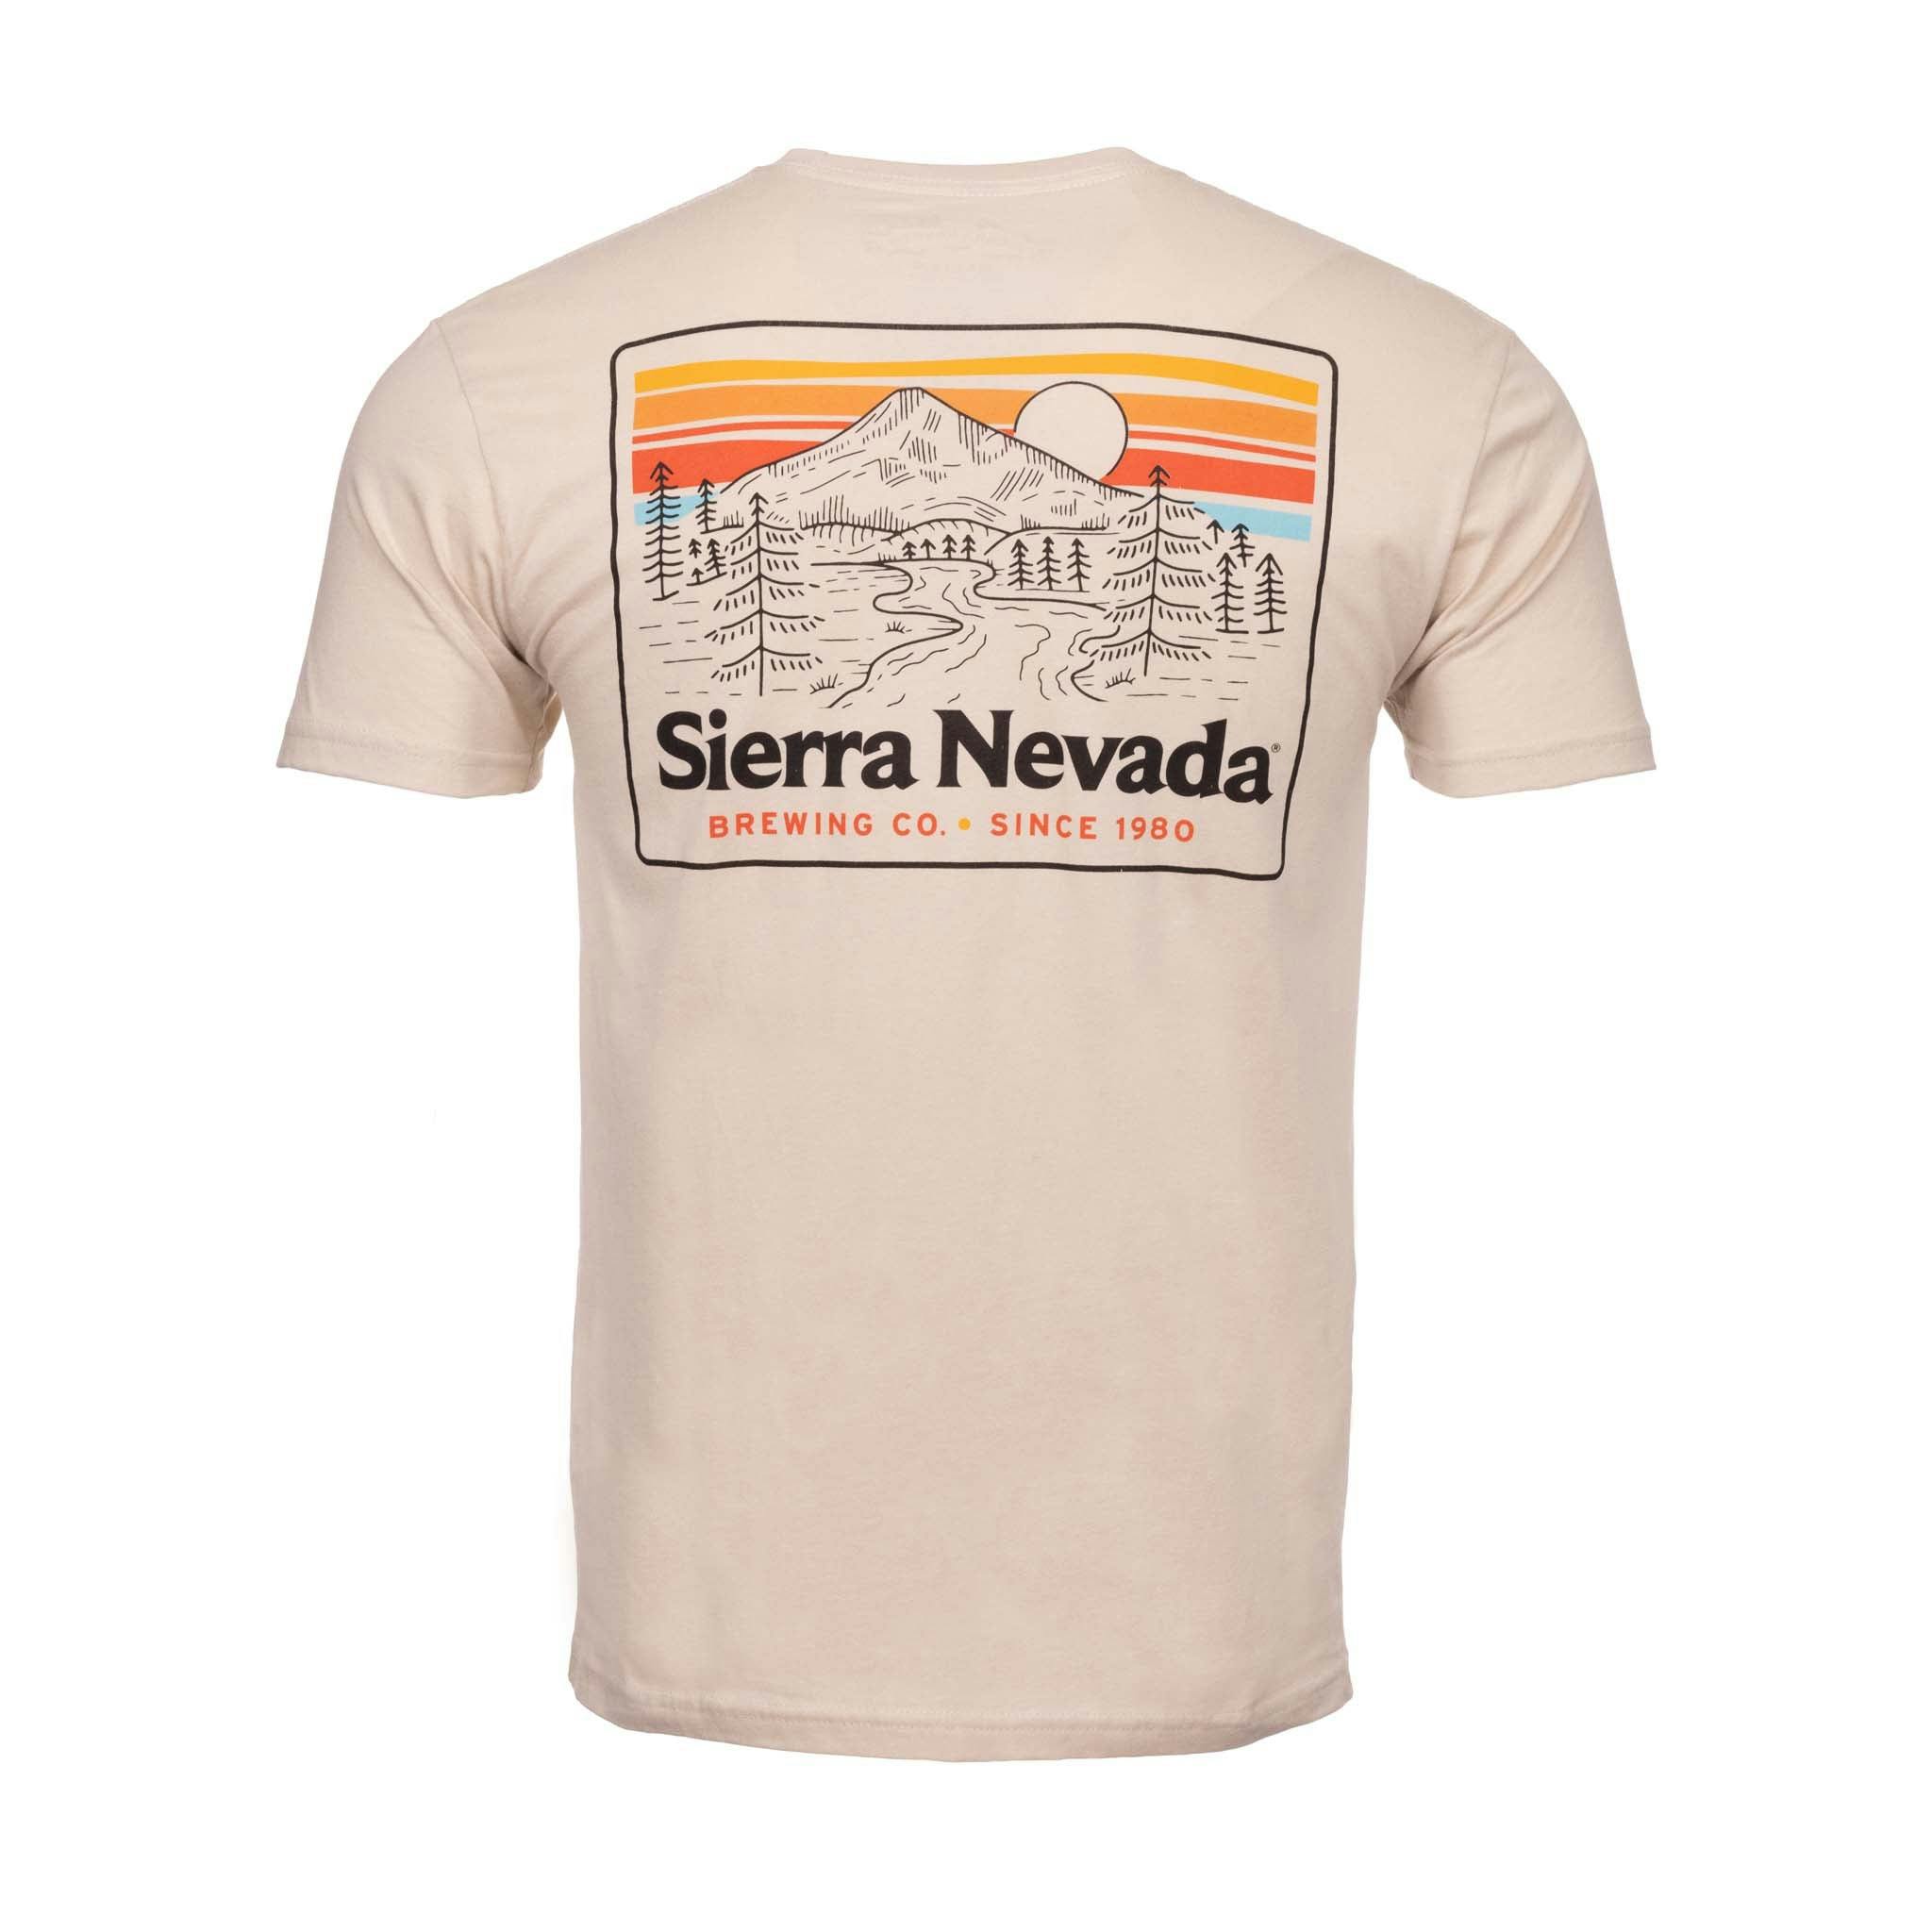 Sierra Nevada Trail Cream T-Shirt - Back view